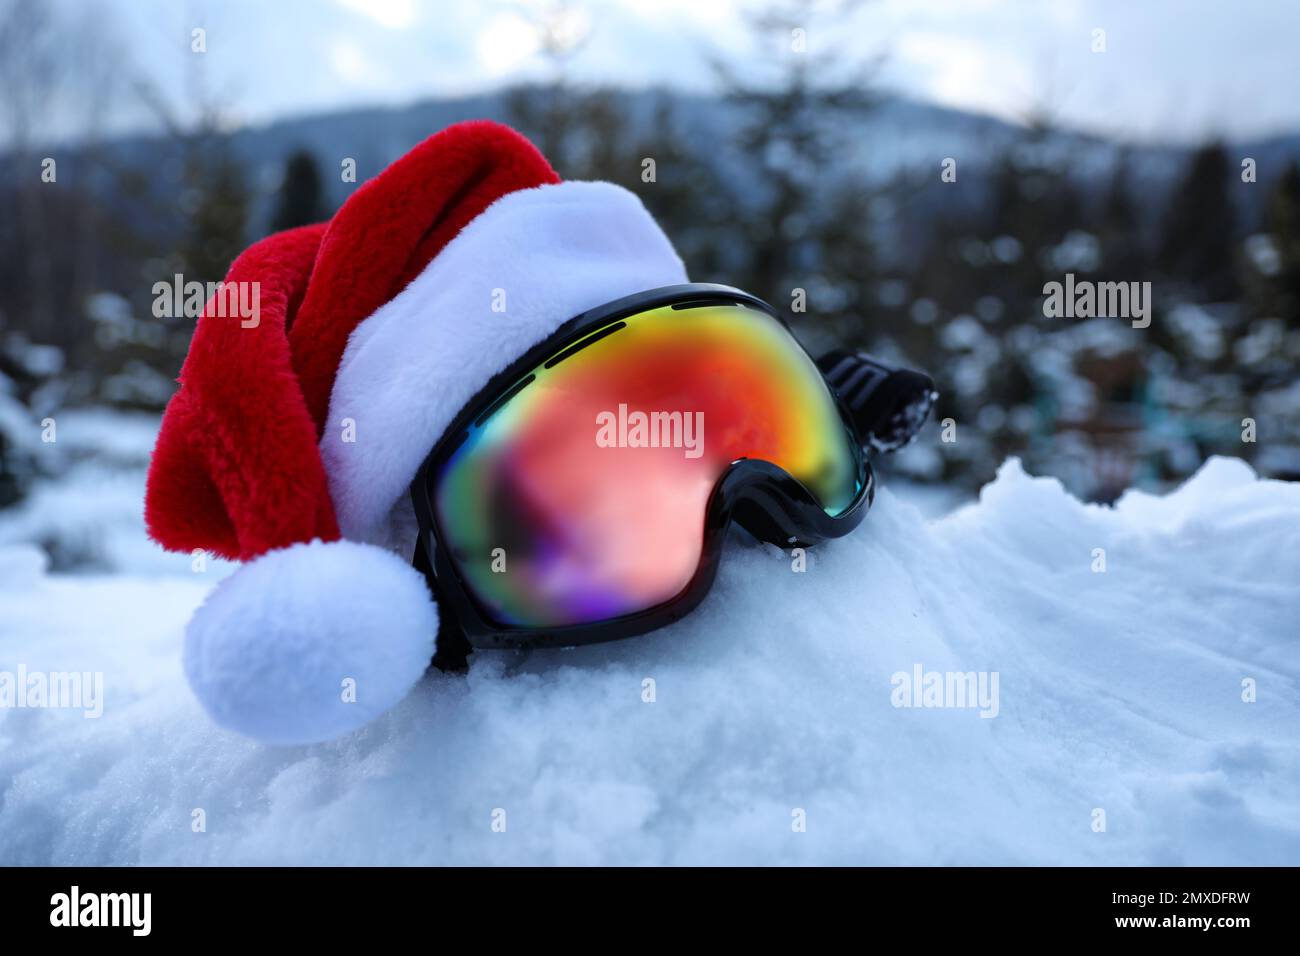 Elegantes gafas de esquí con sombrero de Papá Noel en la nieve al aire libre. Equipamiento deportivo de invierno Foto de stock